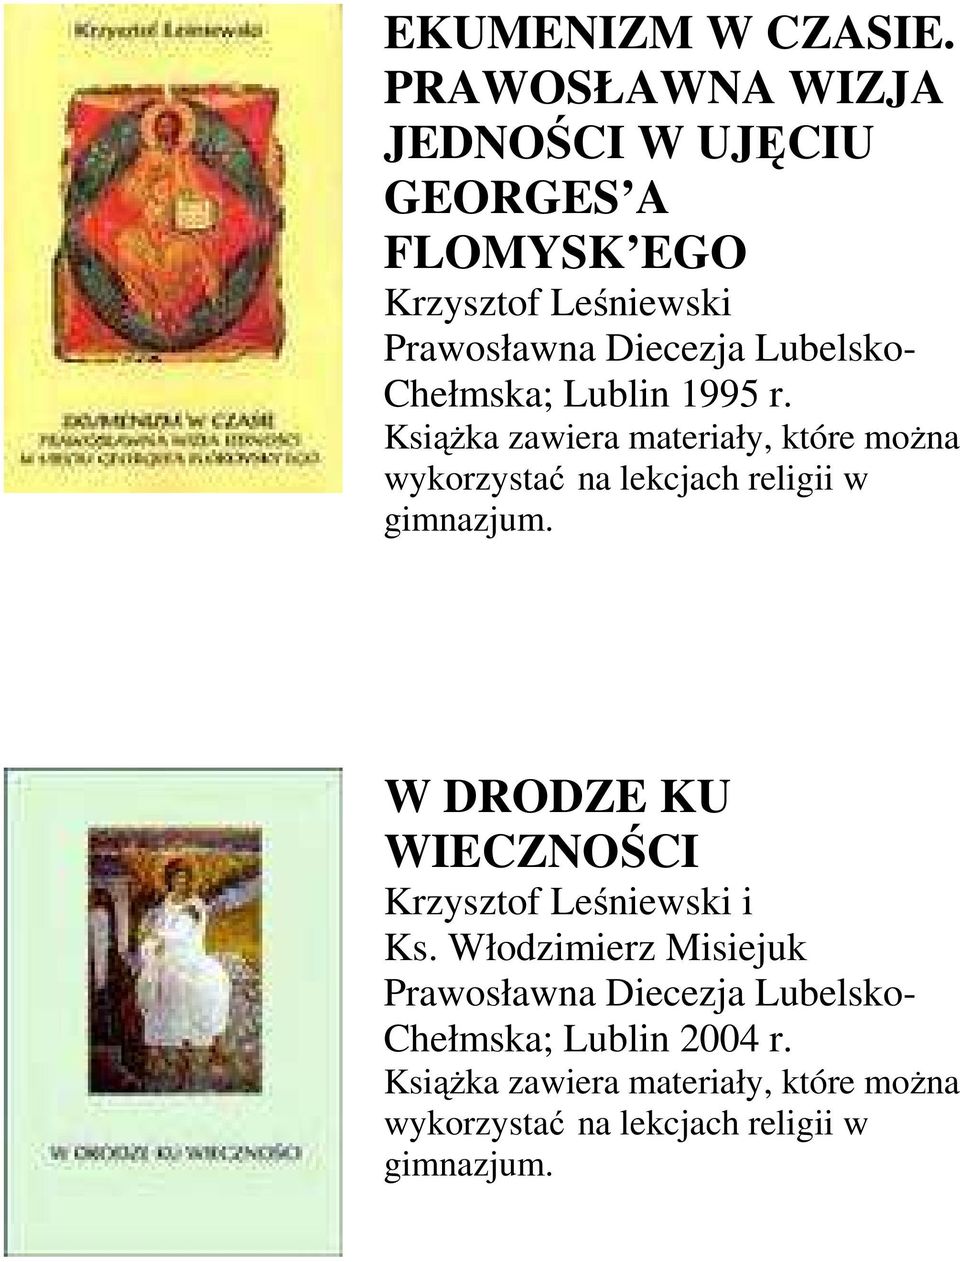 Chełmska; Lublin 1995 r. Książka zawiera materiały, które można wykorzystać na lekcjach religii w gimnazjum.